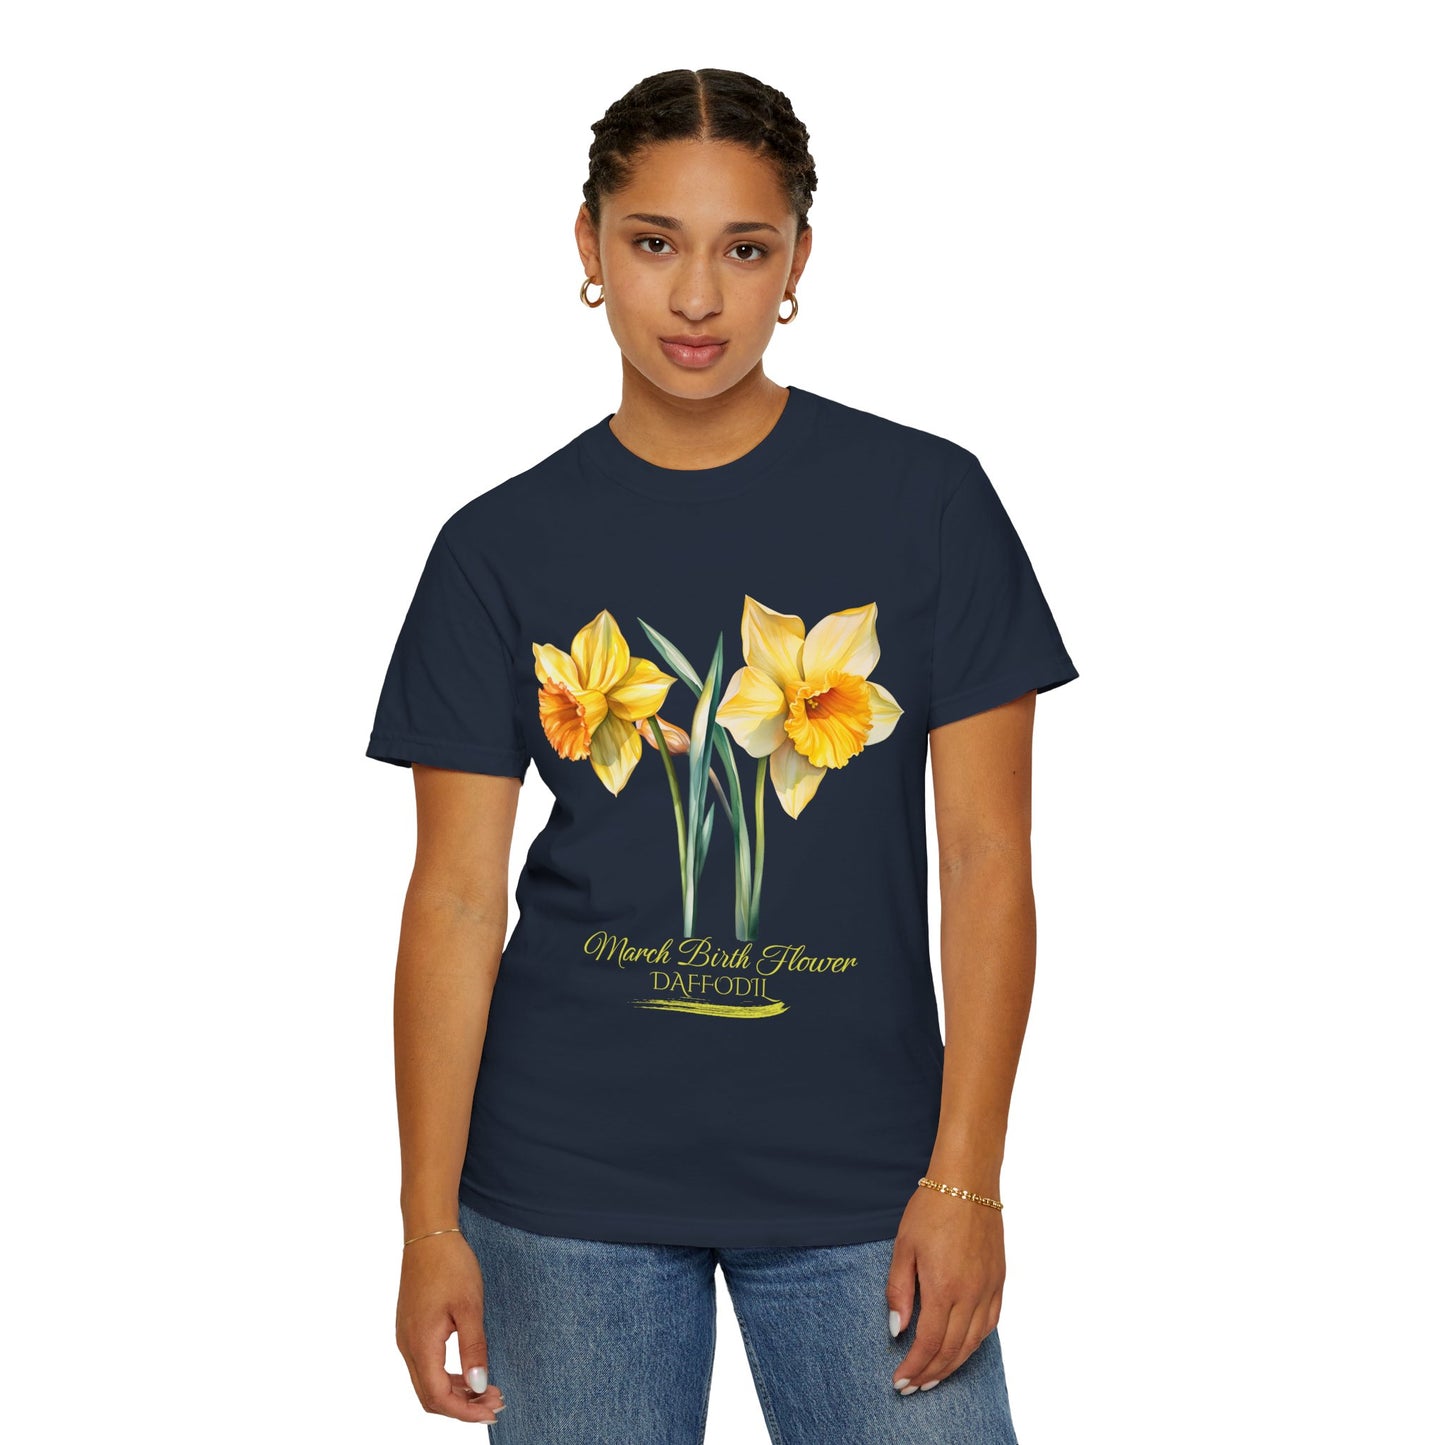 March Birth Flower "Daffodil" (For Print on Dark Fabric) - Unisex Garment-Dyed T-shirt